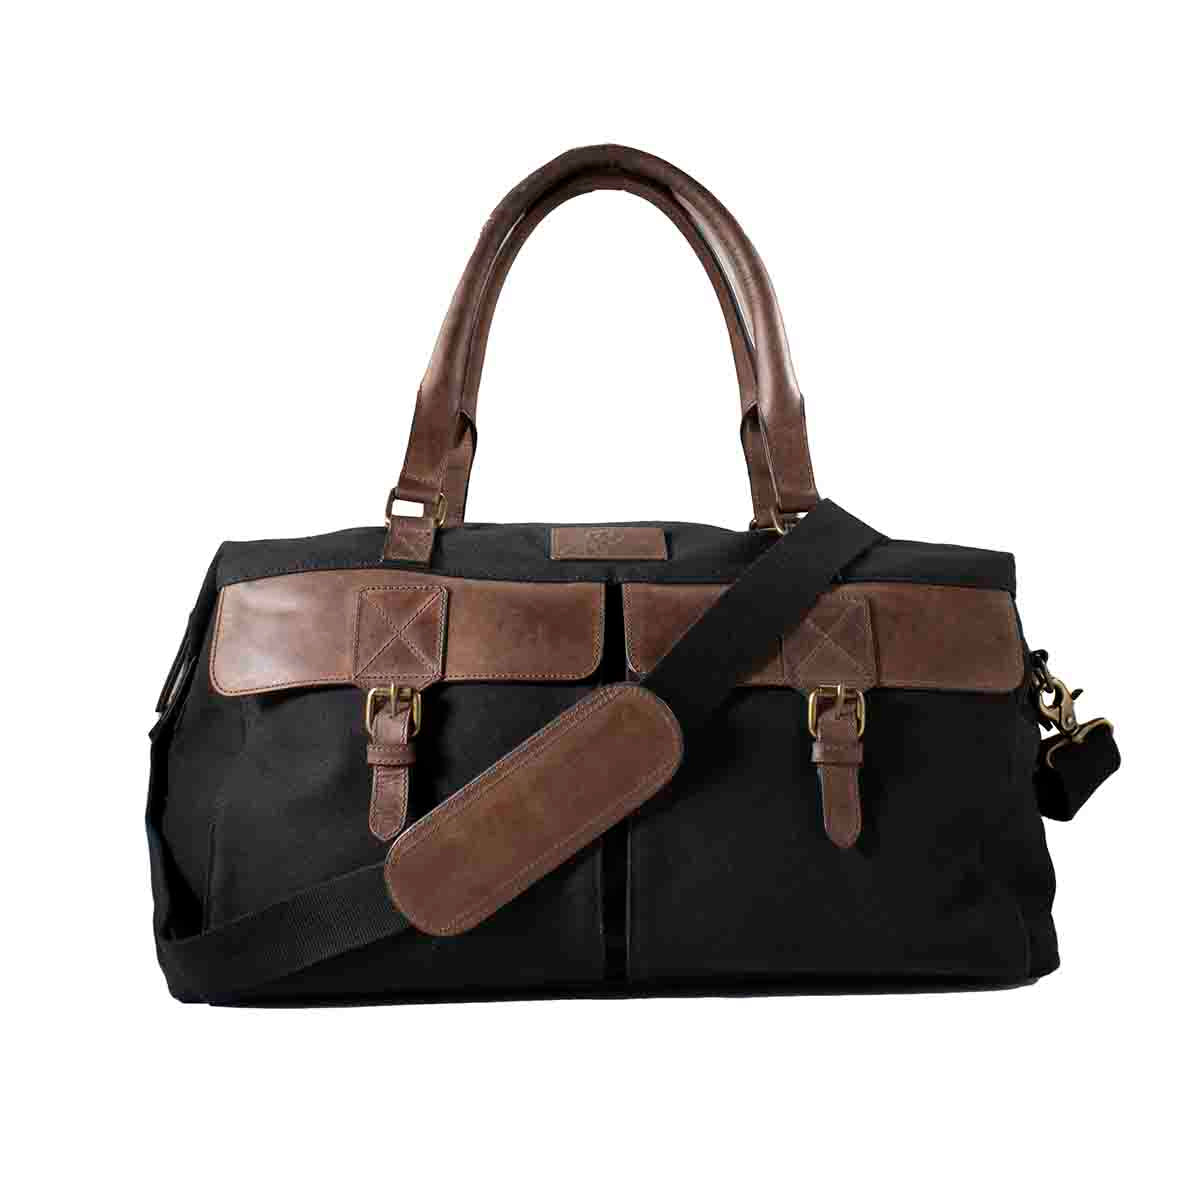 Ariat Men's Gear Duffle Bag Black/Brown